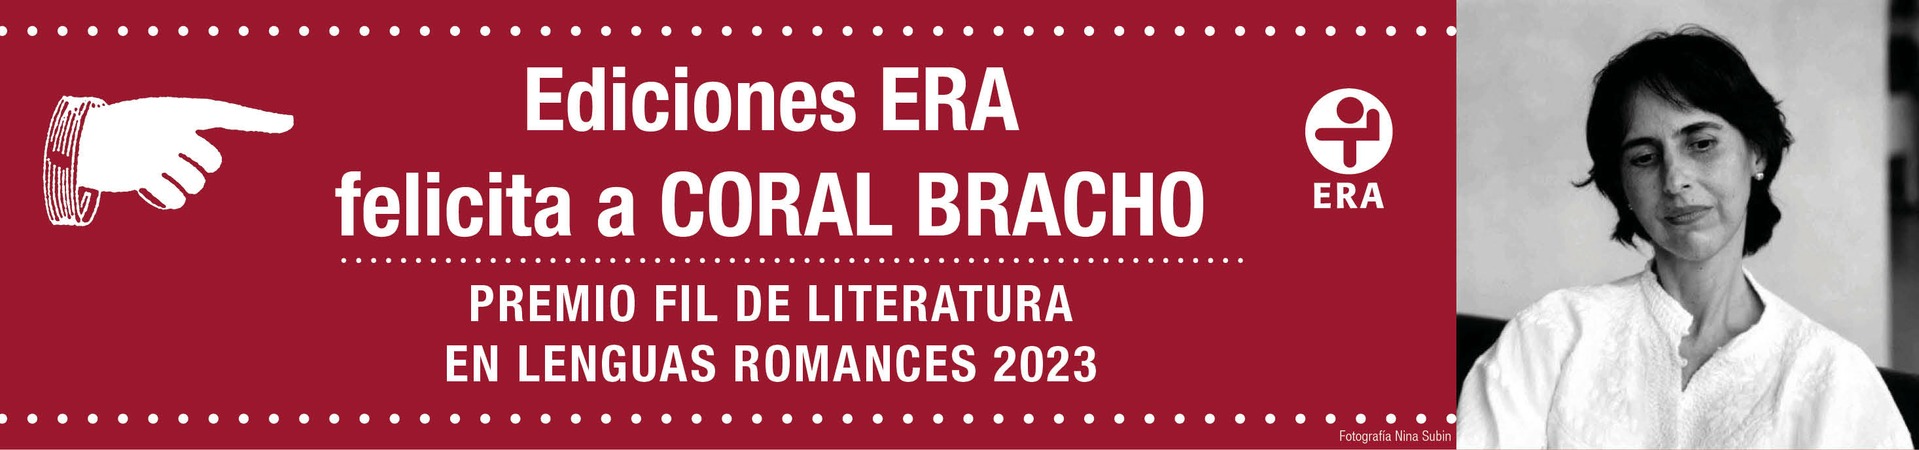 Coral Bracho. Premio Fil de Literatura 2023